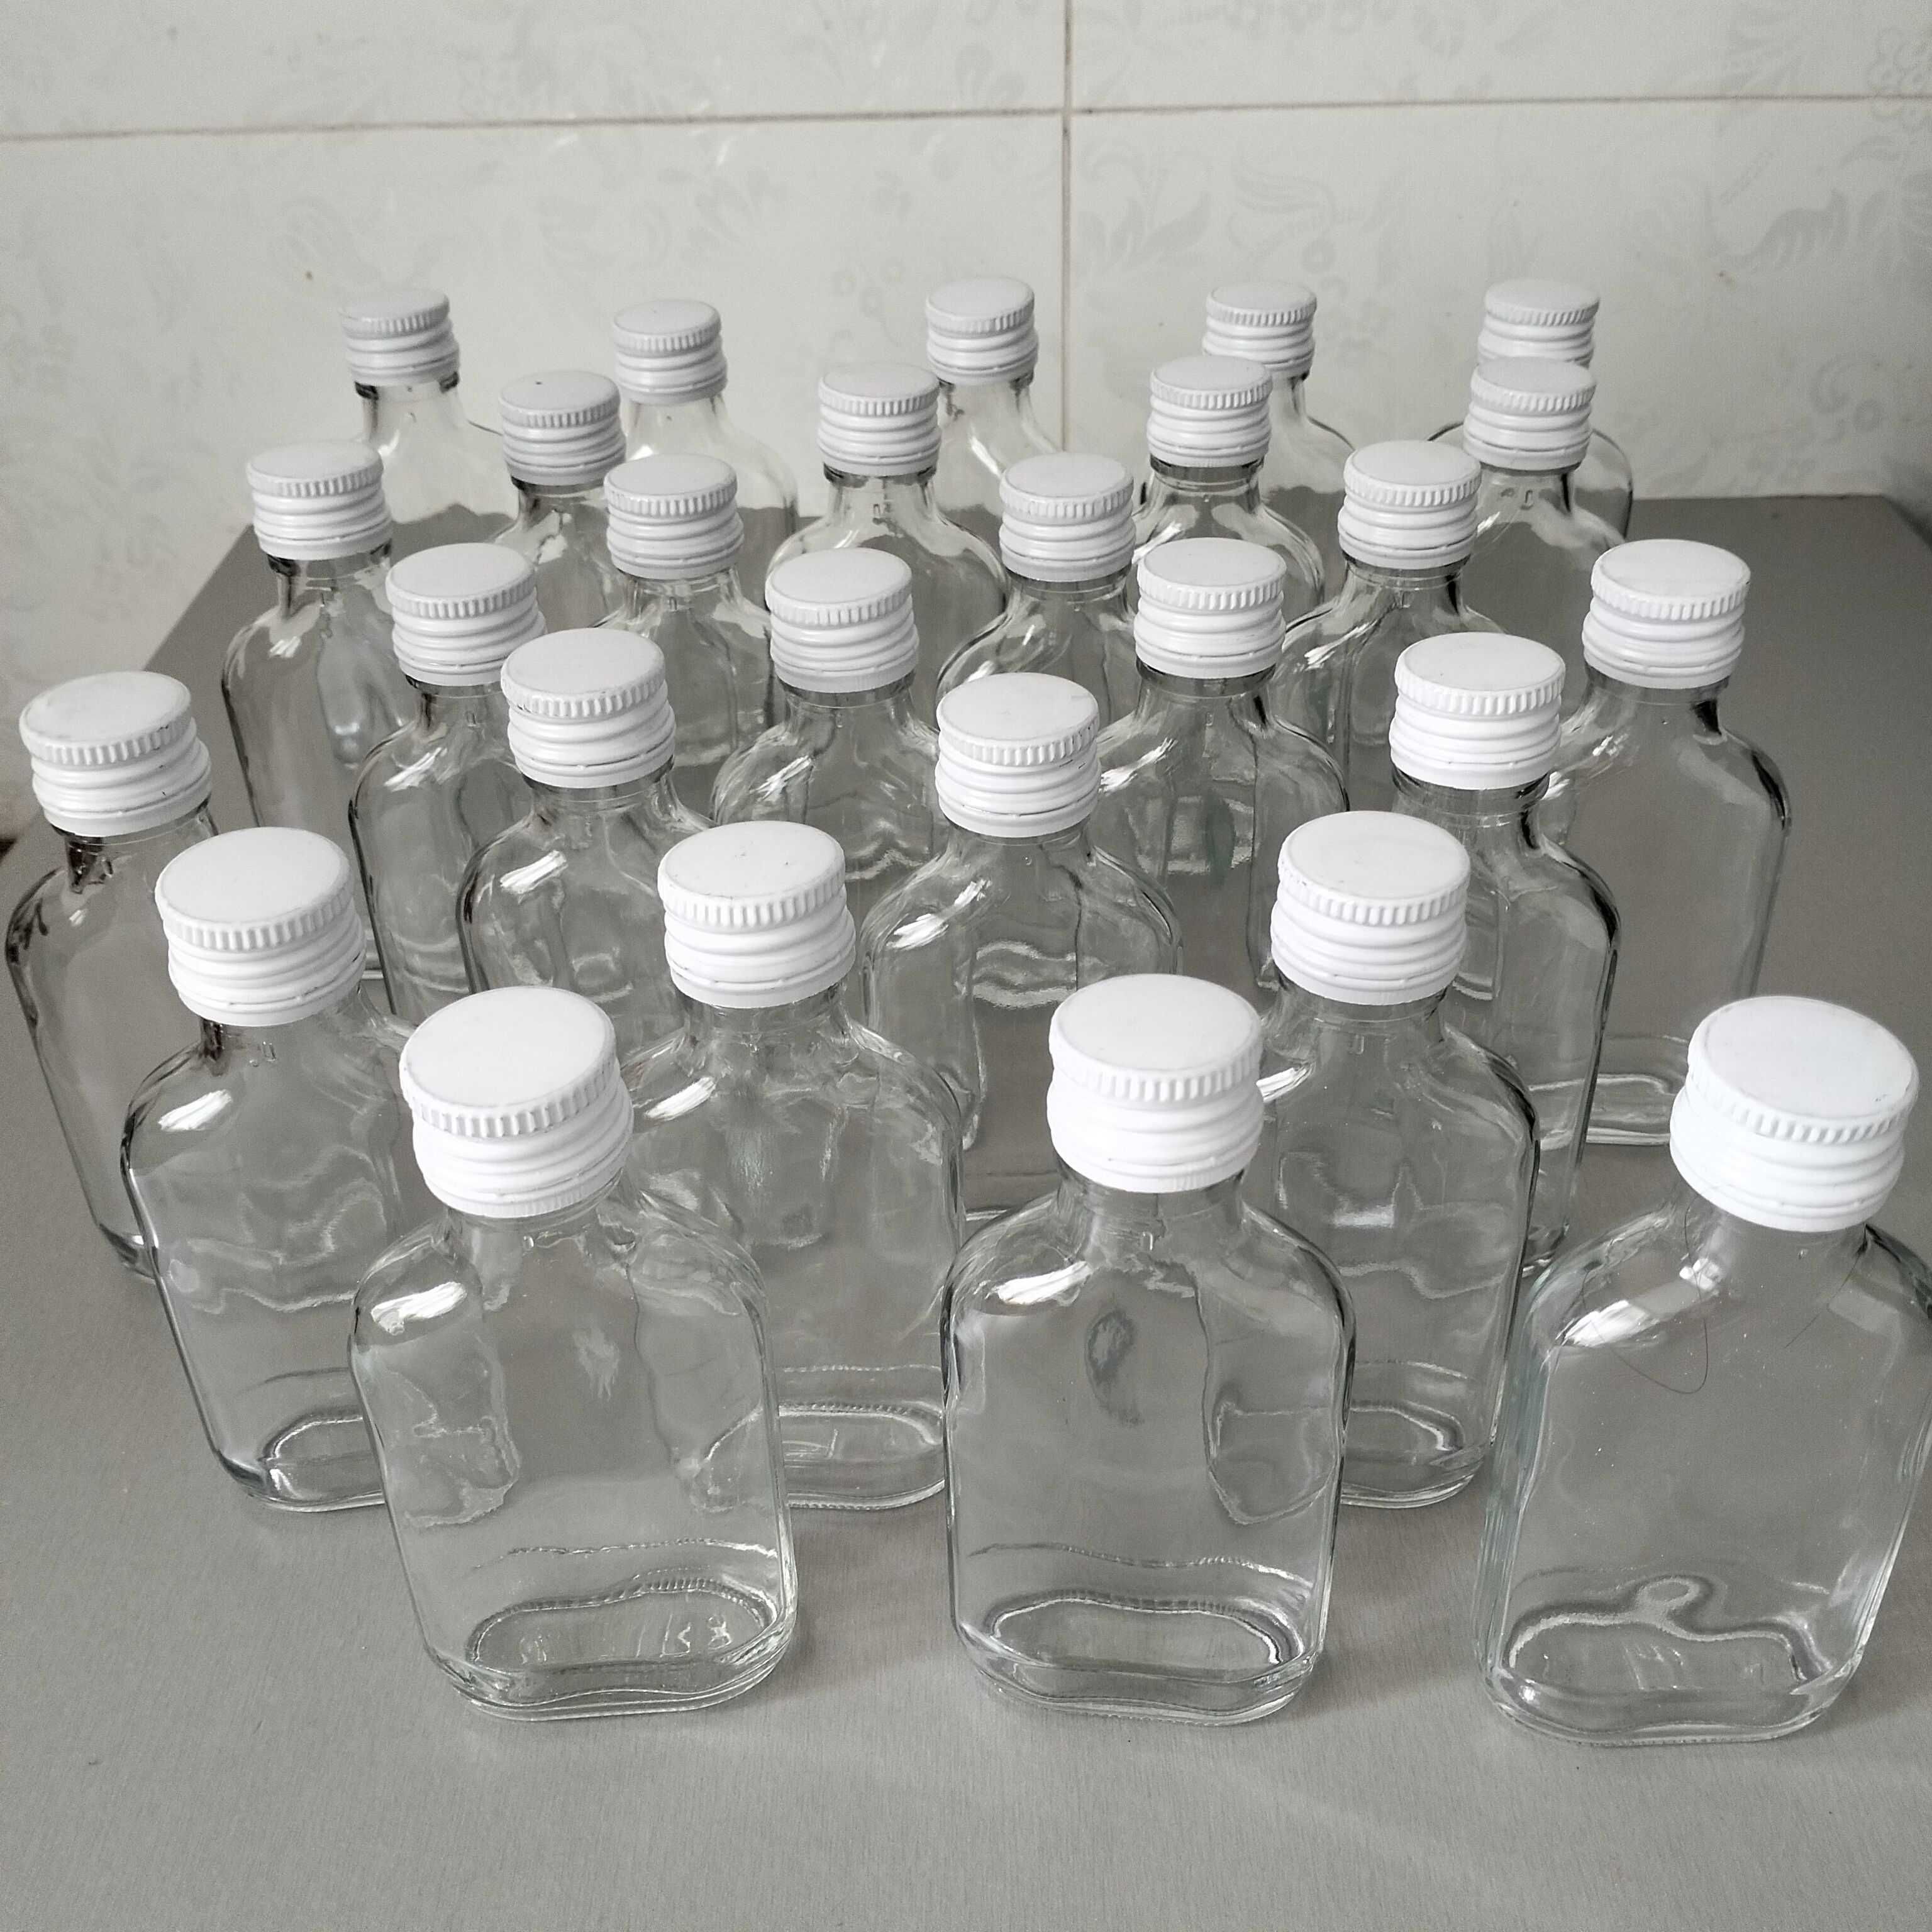 Butelki 100 ml setki 15 sztuk plus zakrętki białe.